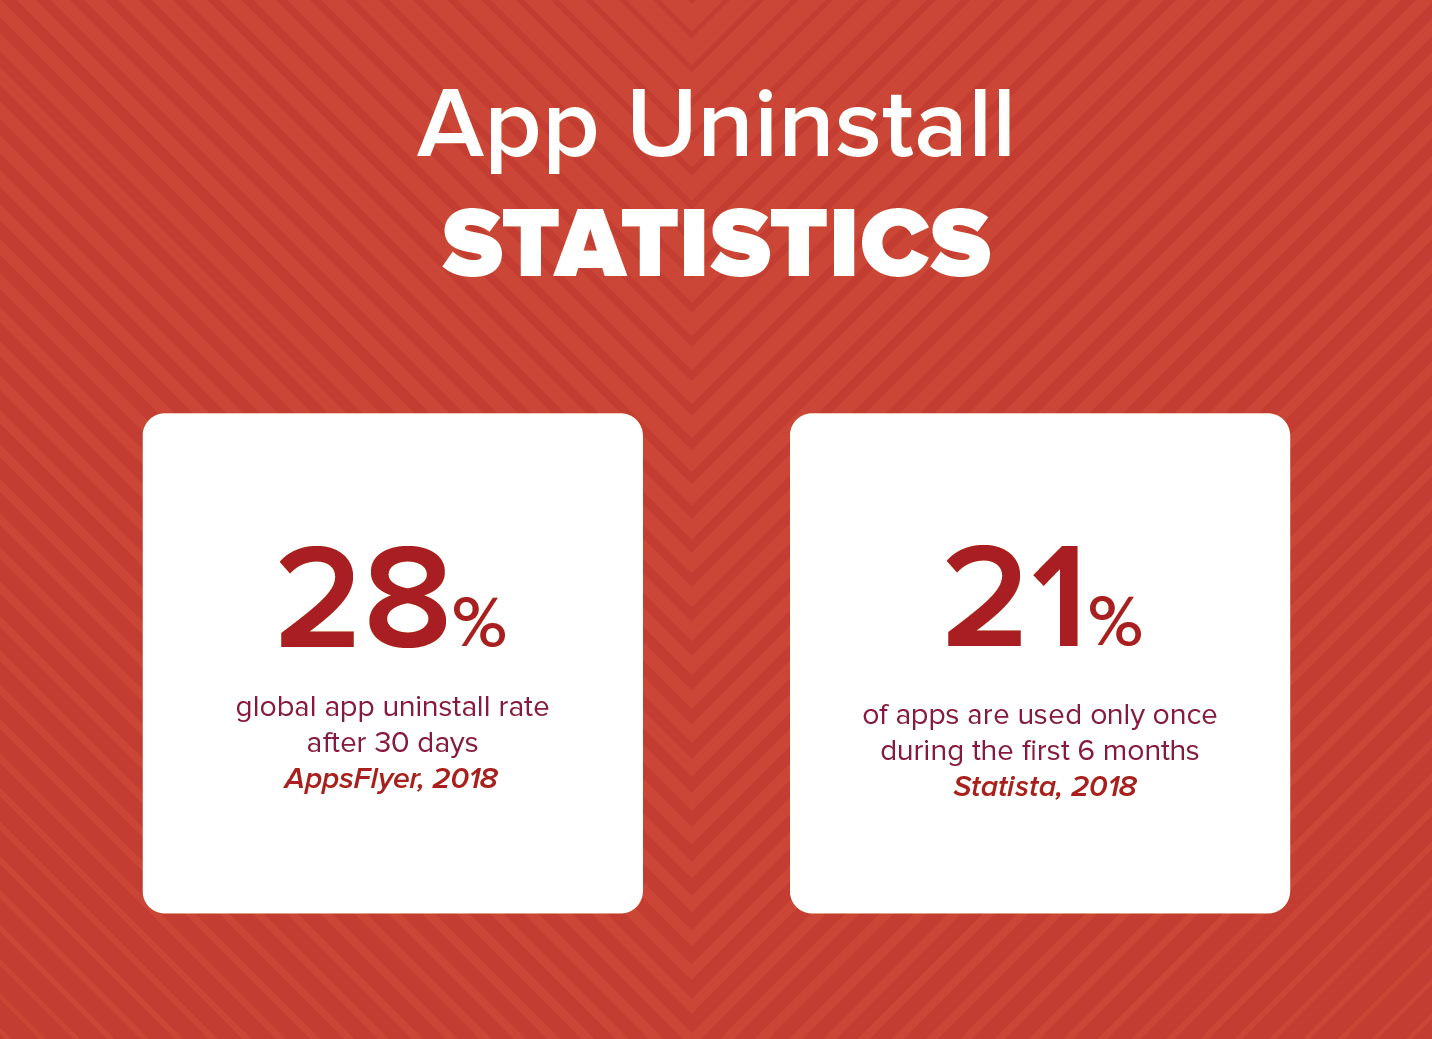 App Uninstall Statistics 